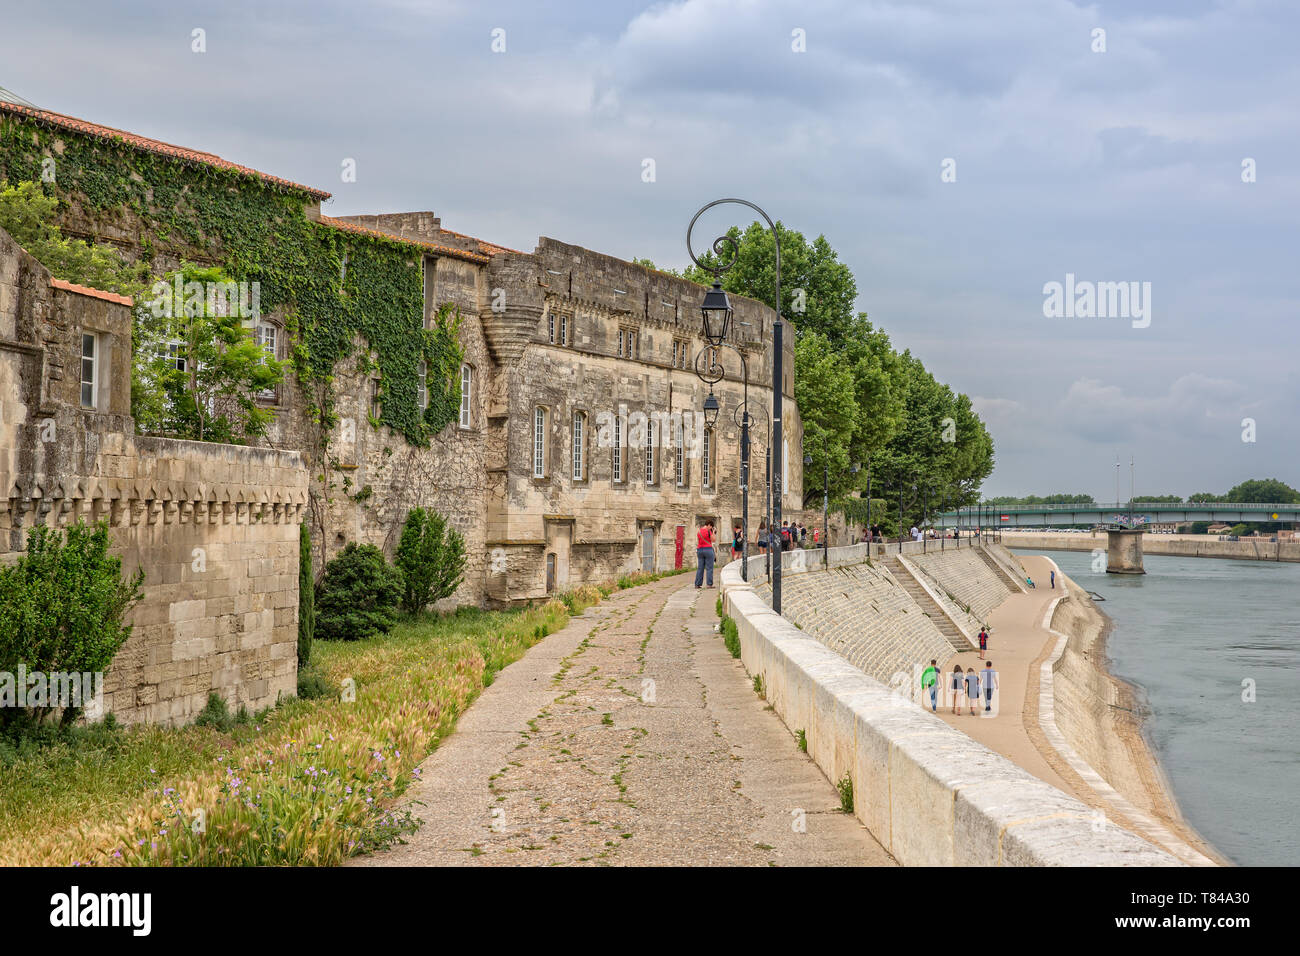 Arles,Provence, Francia - 03 Jun 2017: Peaple caminando a lo largo de las orillas del Ródano. Del Musée Reattu Backview con vistas al Ródano y el paseo de la costa Foto de stock